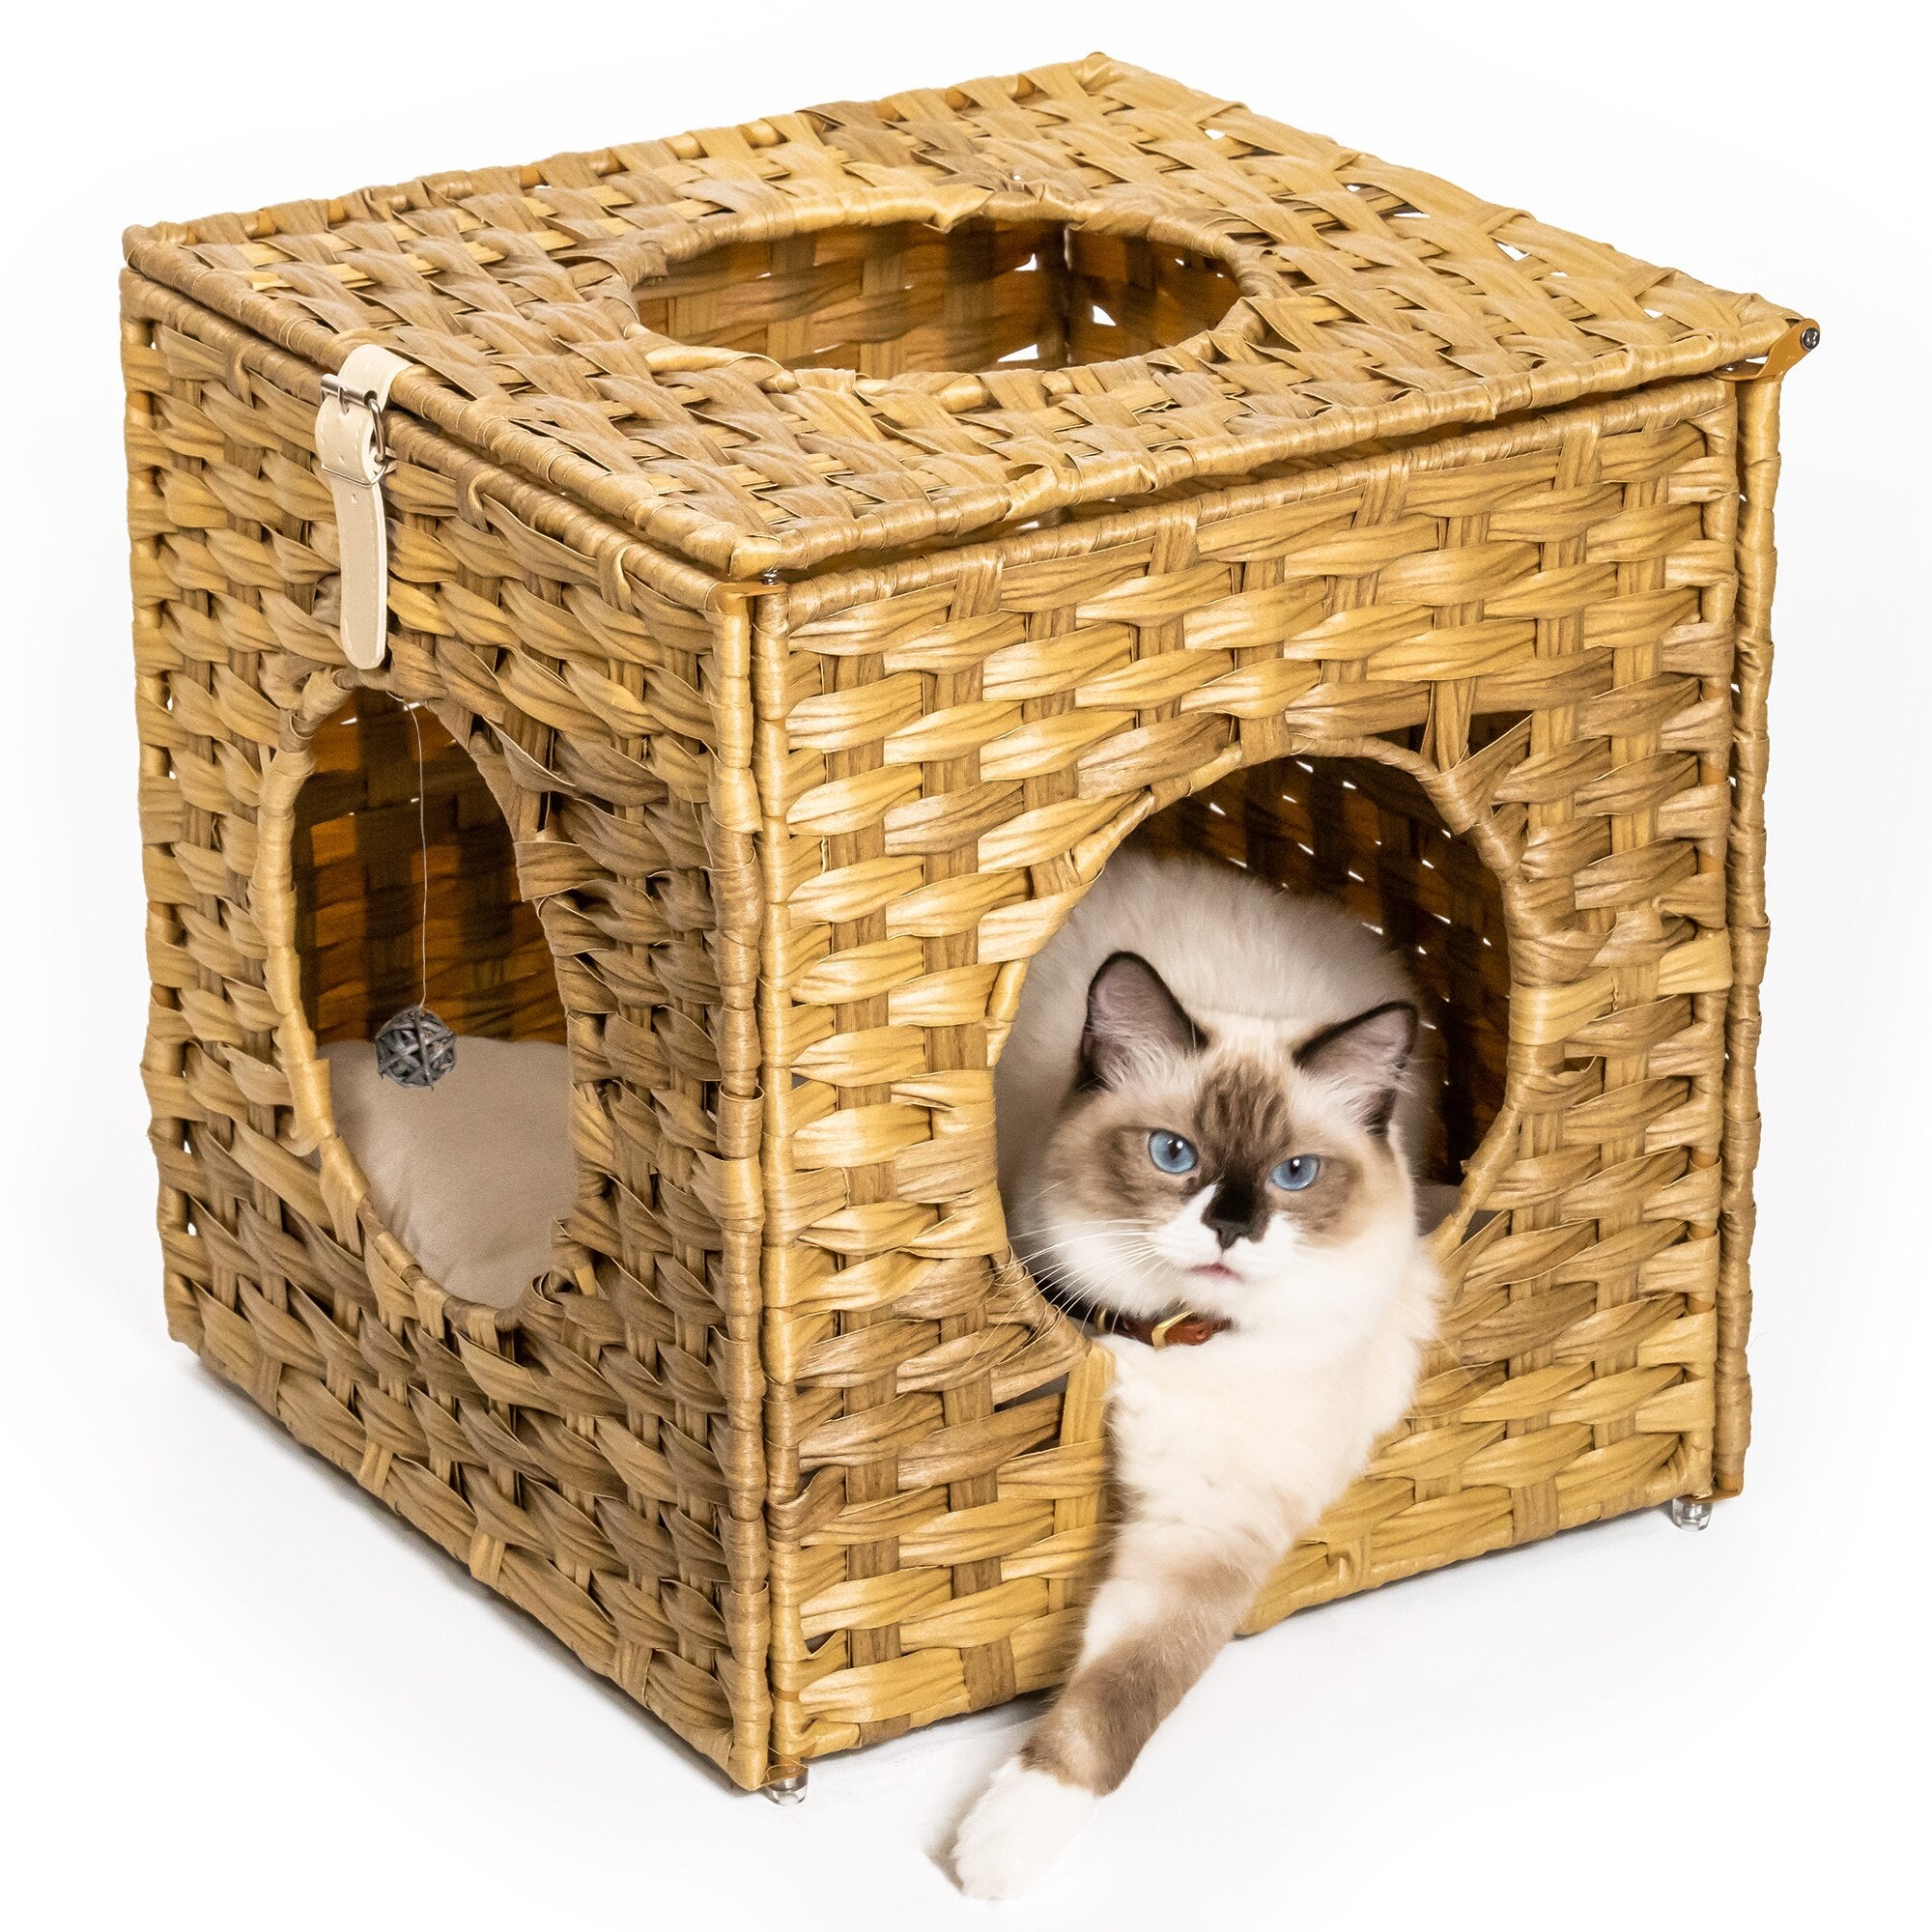 Handwoven Wicker Cat House